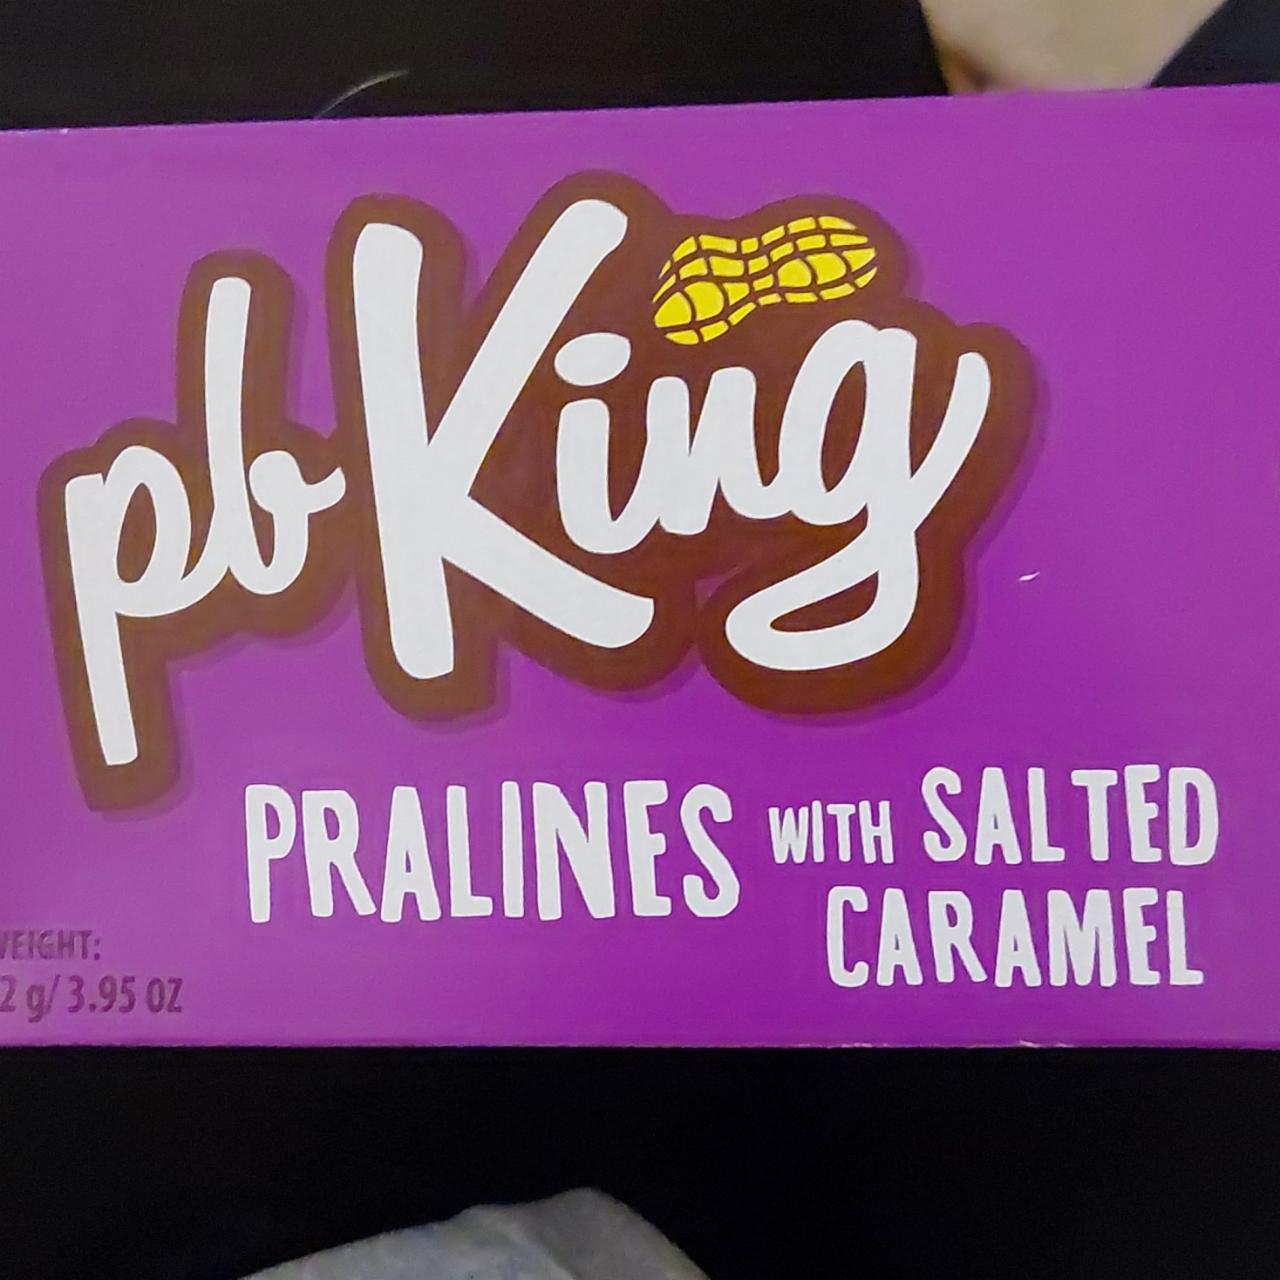 Fotografie - Pb king pralines mit salted karamel